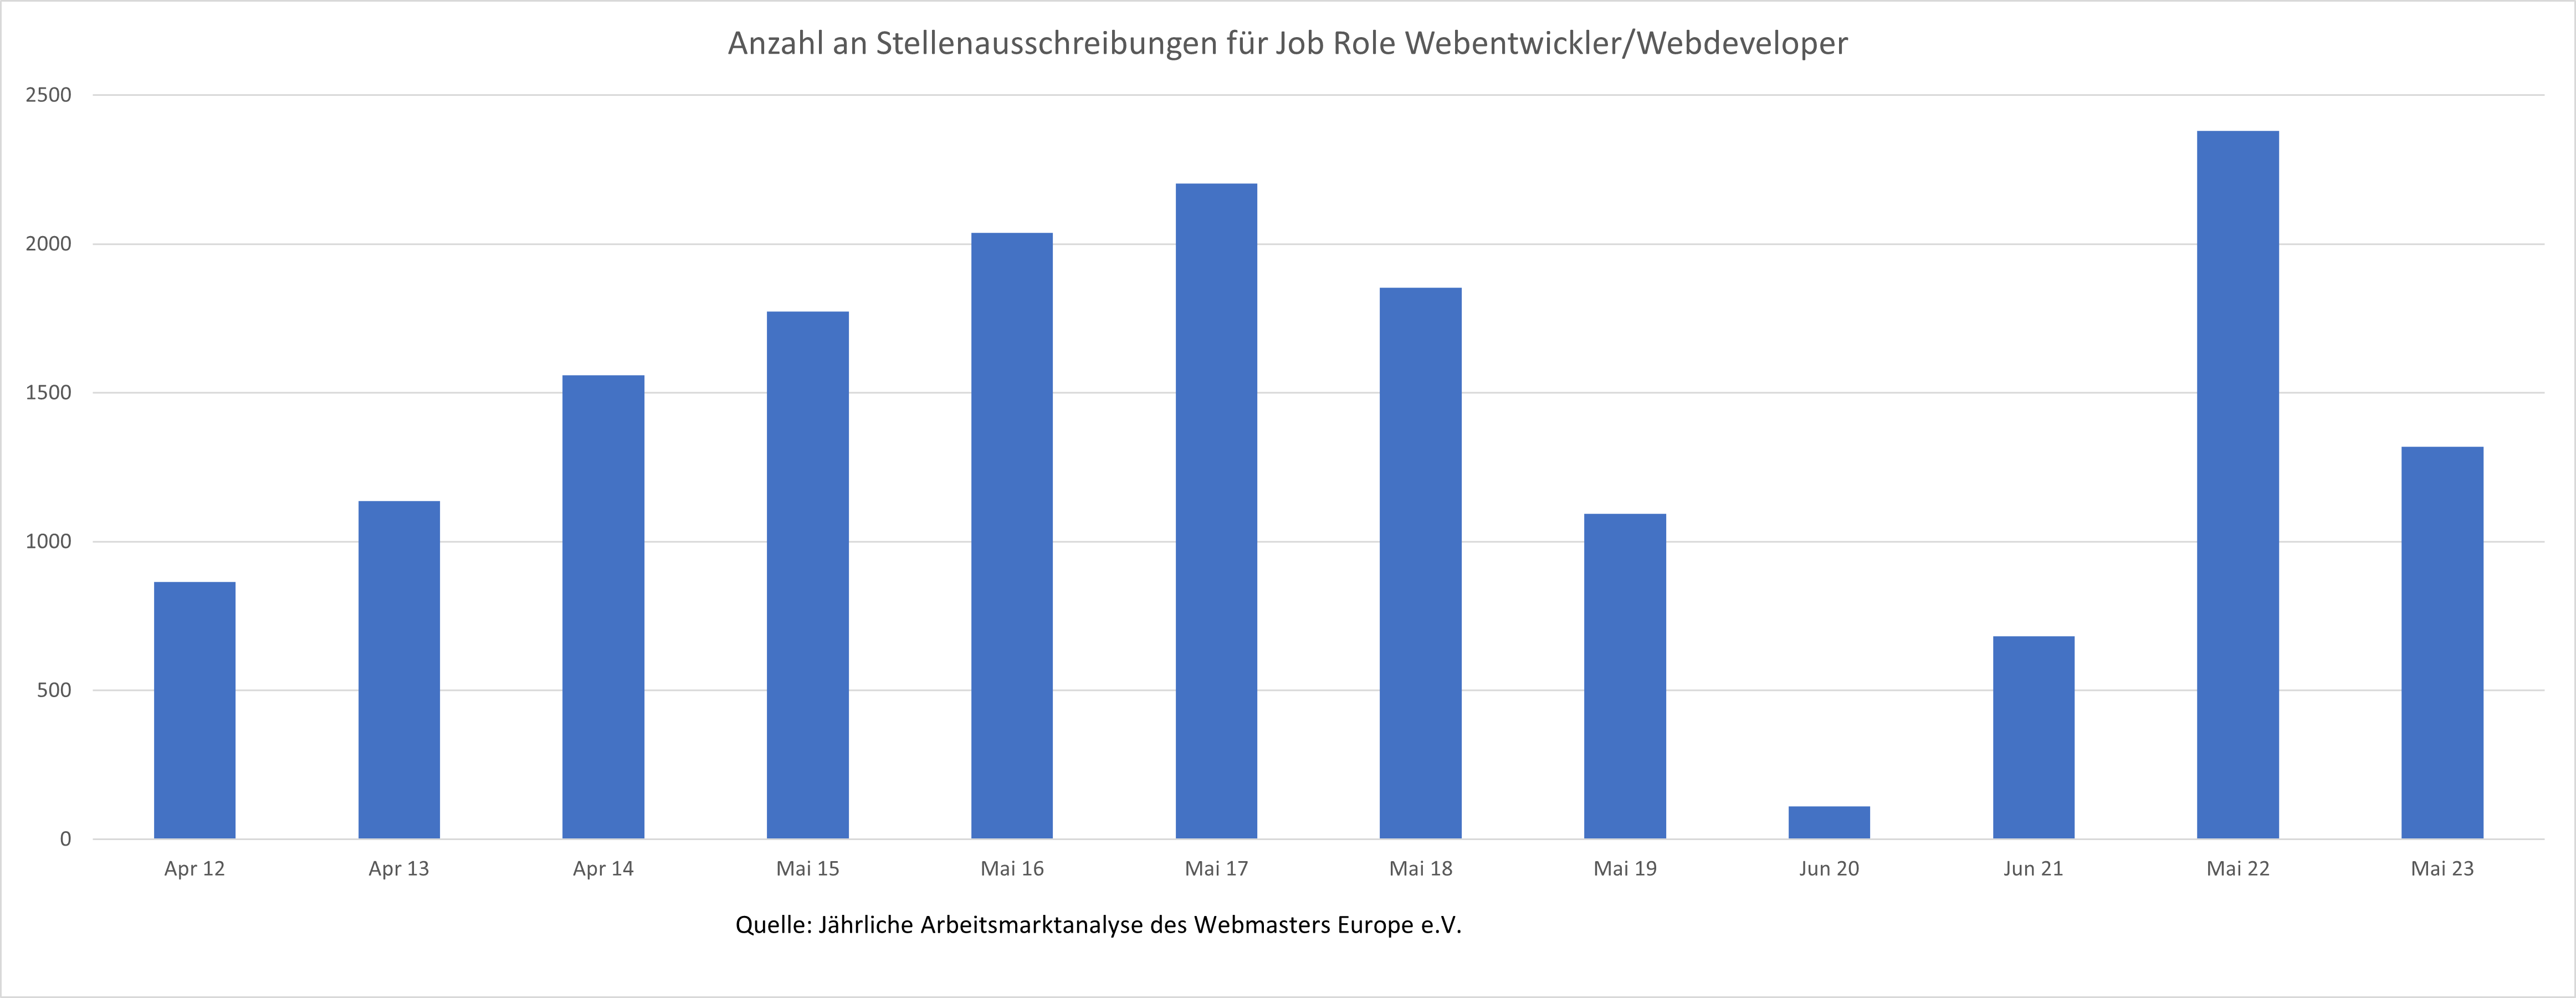 Entwicklung der Anzahl an Stellenausschreibungen für Webentwickler auf dem deutschen Arbeitsmarkt im Zeitraum 2011-2023